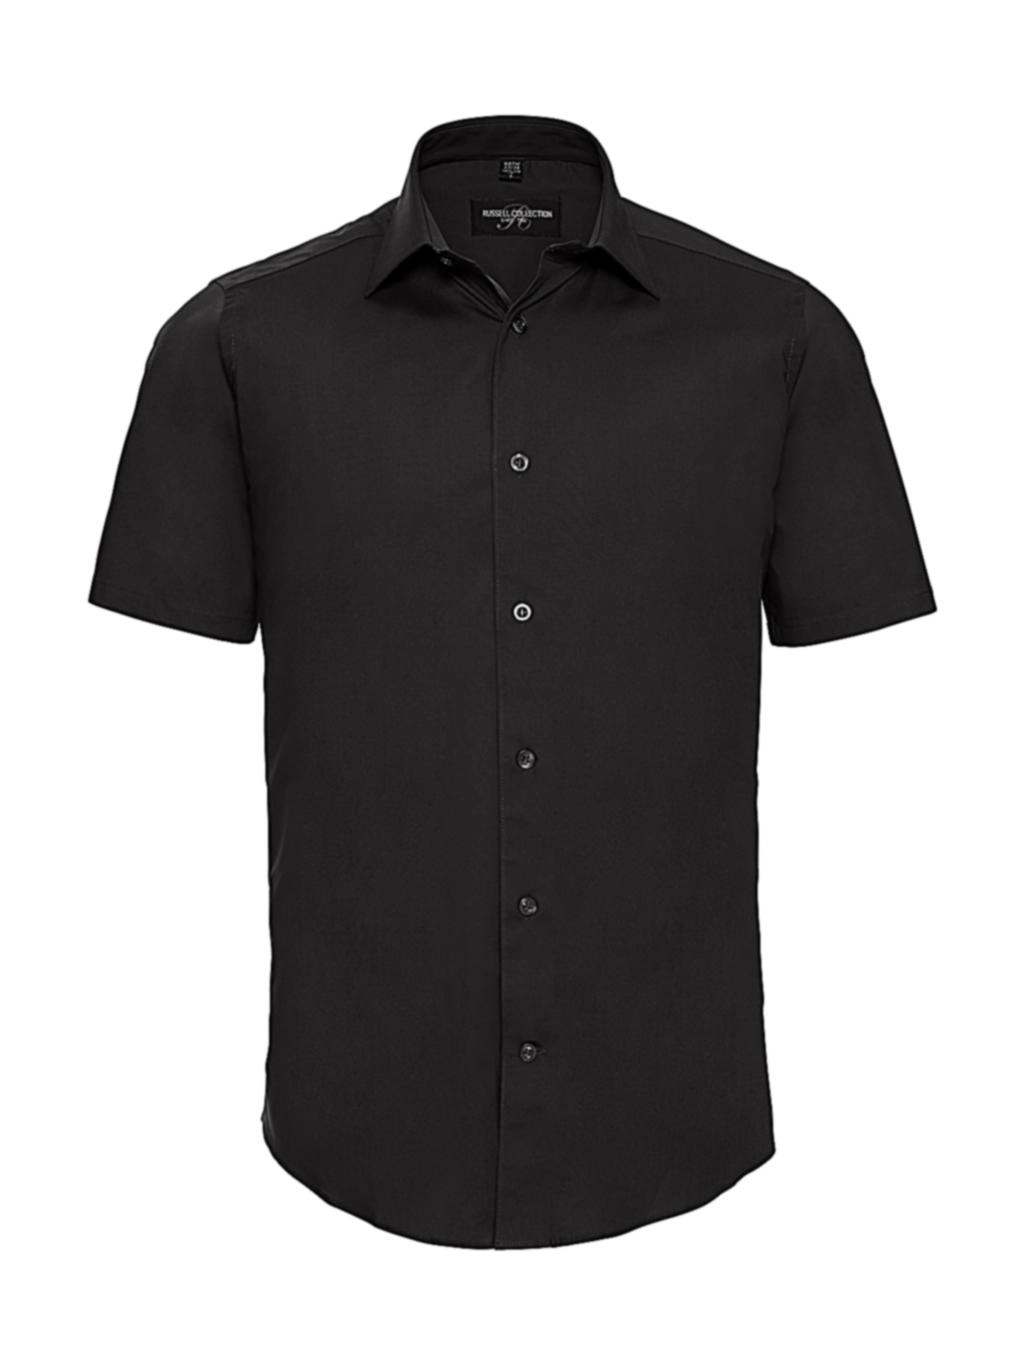 Fitted Stretch Shirt zum Besticken und Bedrucken in der Farbe Black mit Ihren Logo, Schriftzug oder Motiv.